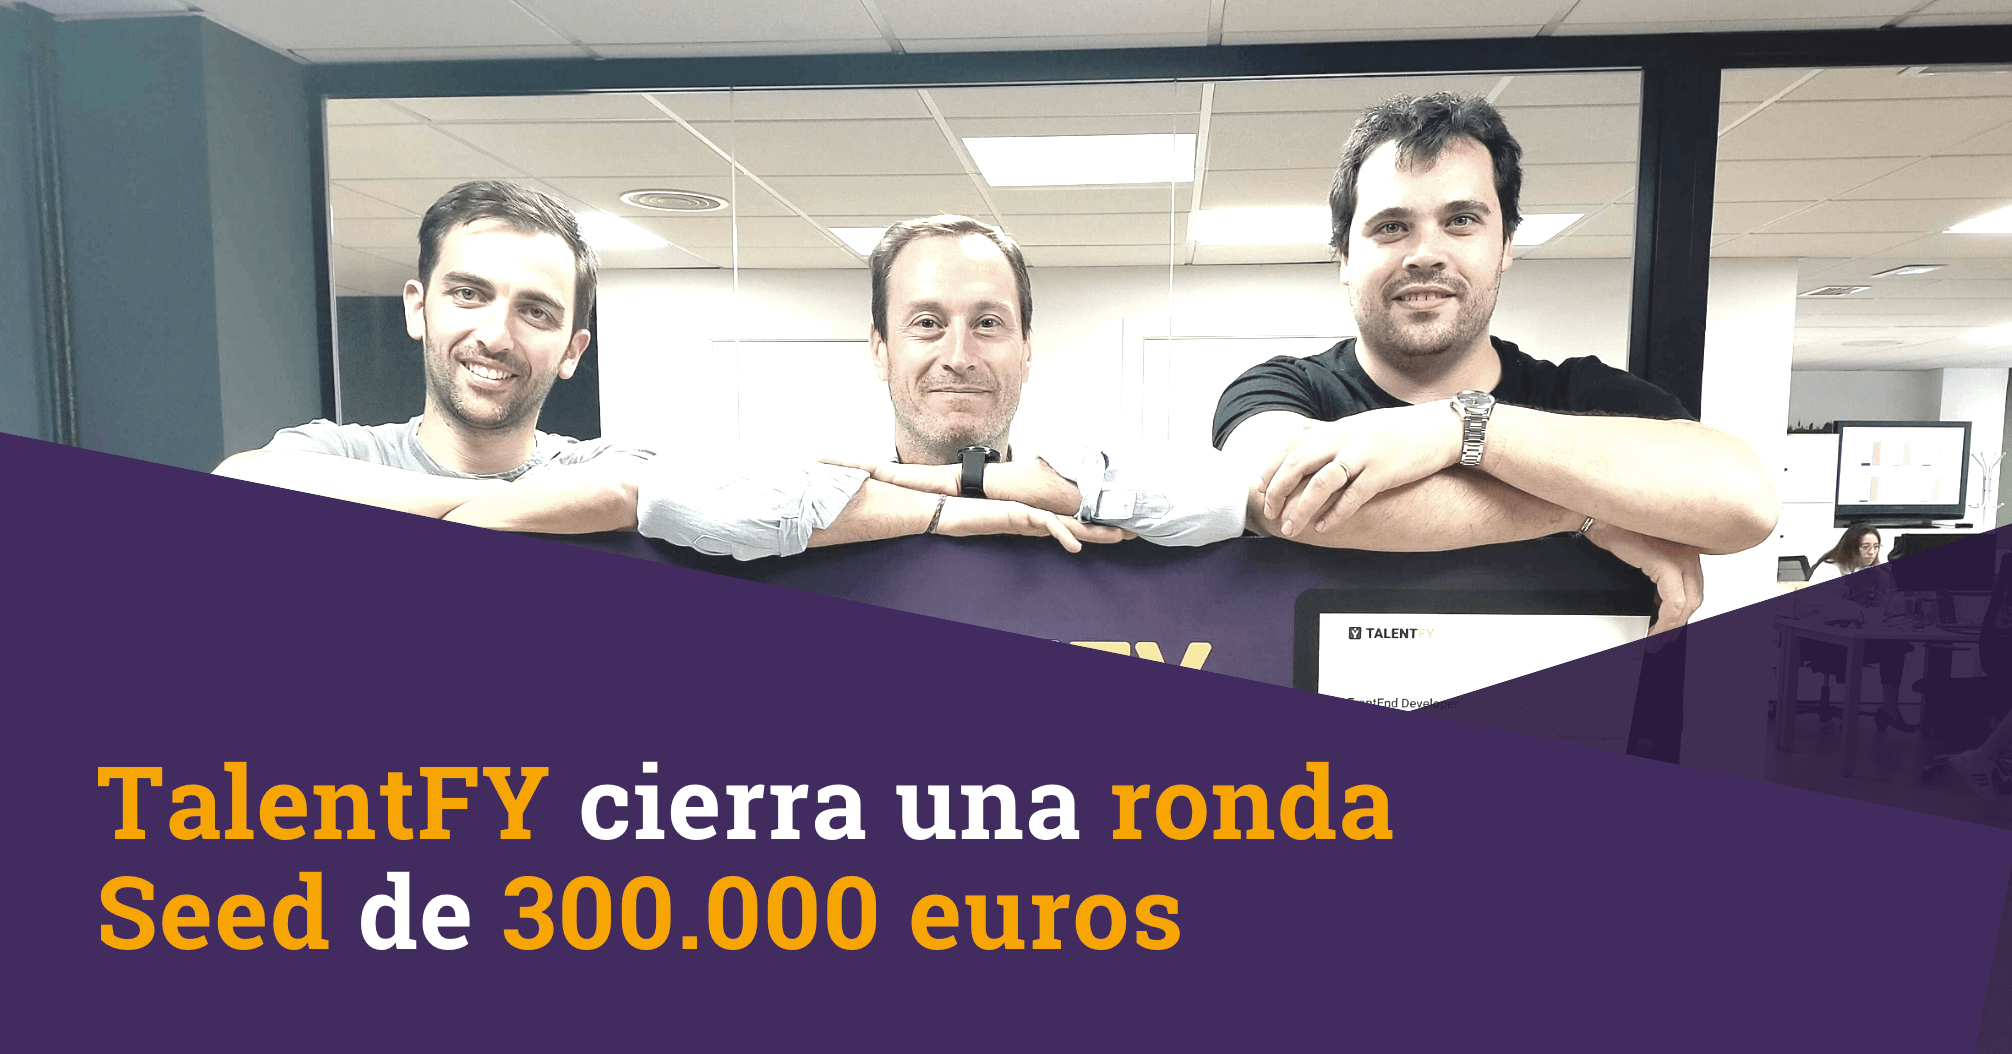 TalentFY cierra una ronda Seed de 300.000 euros